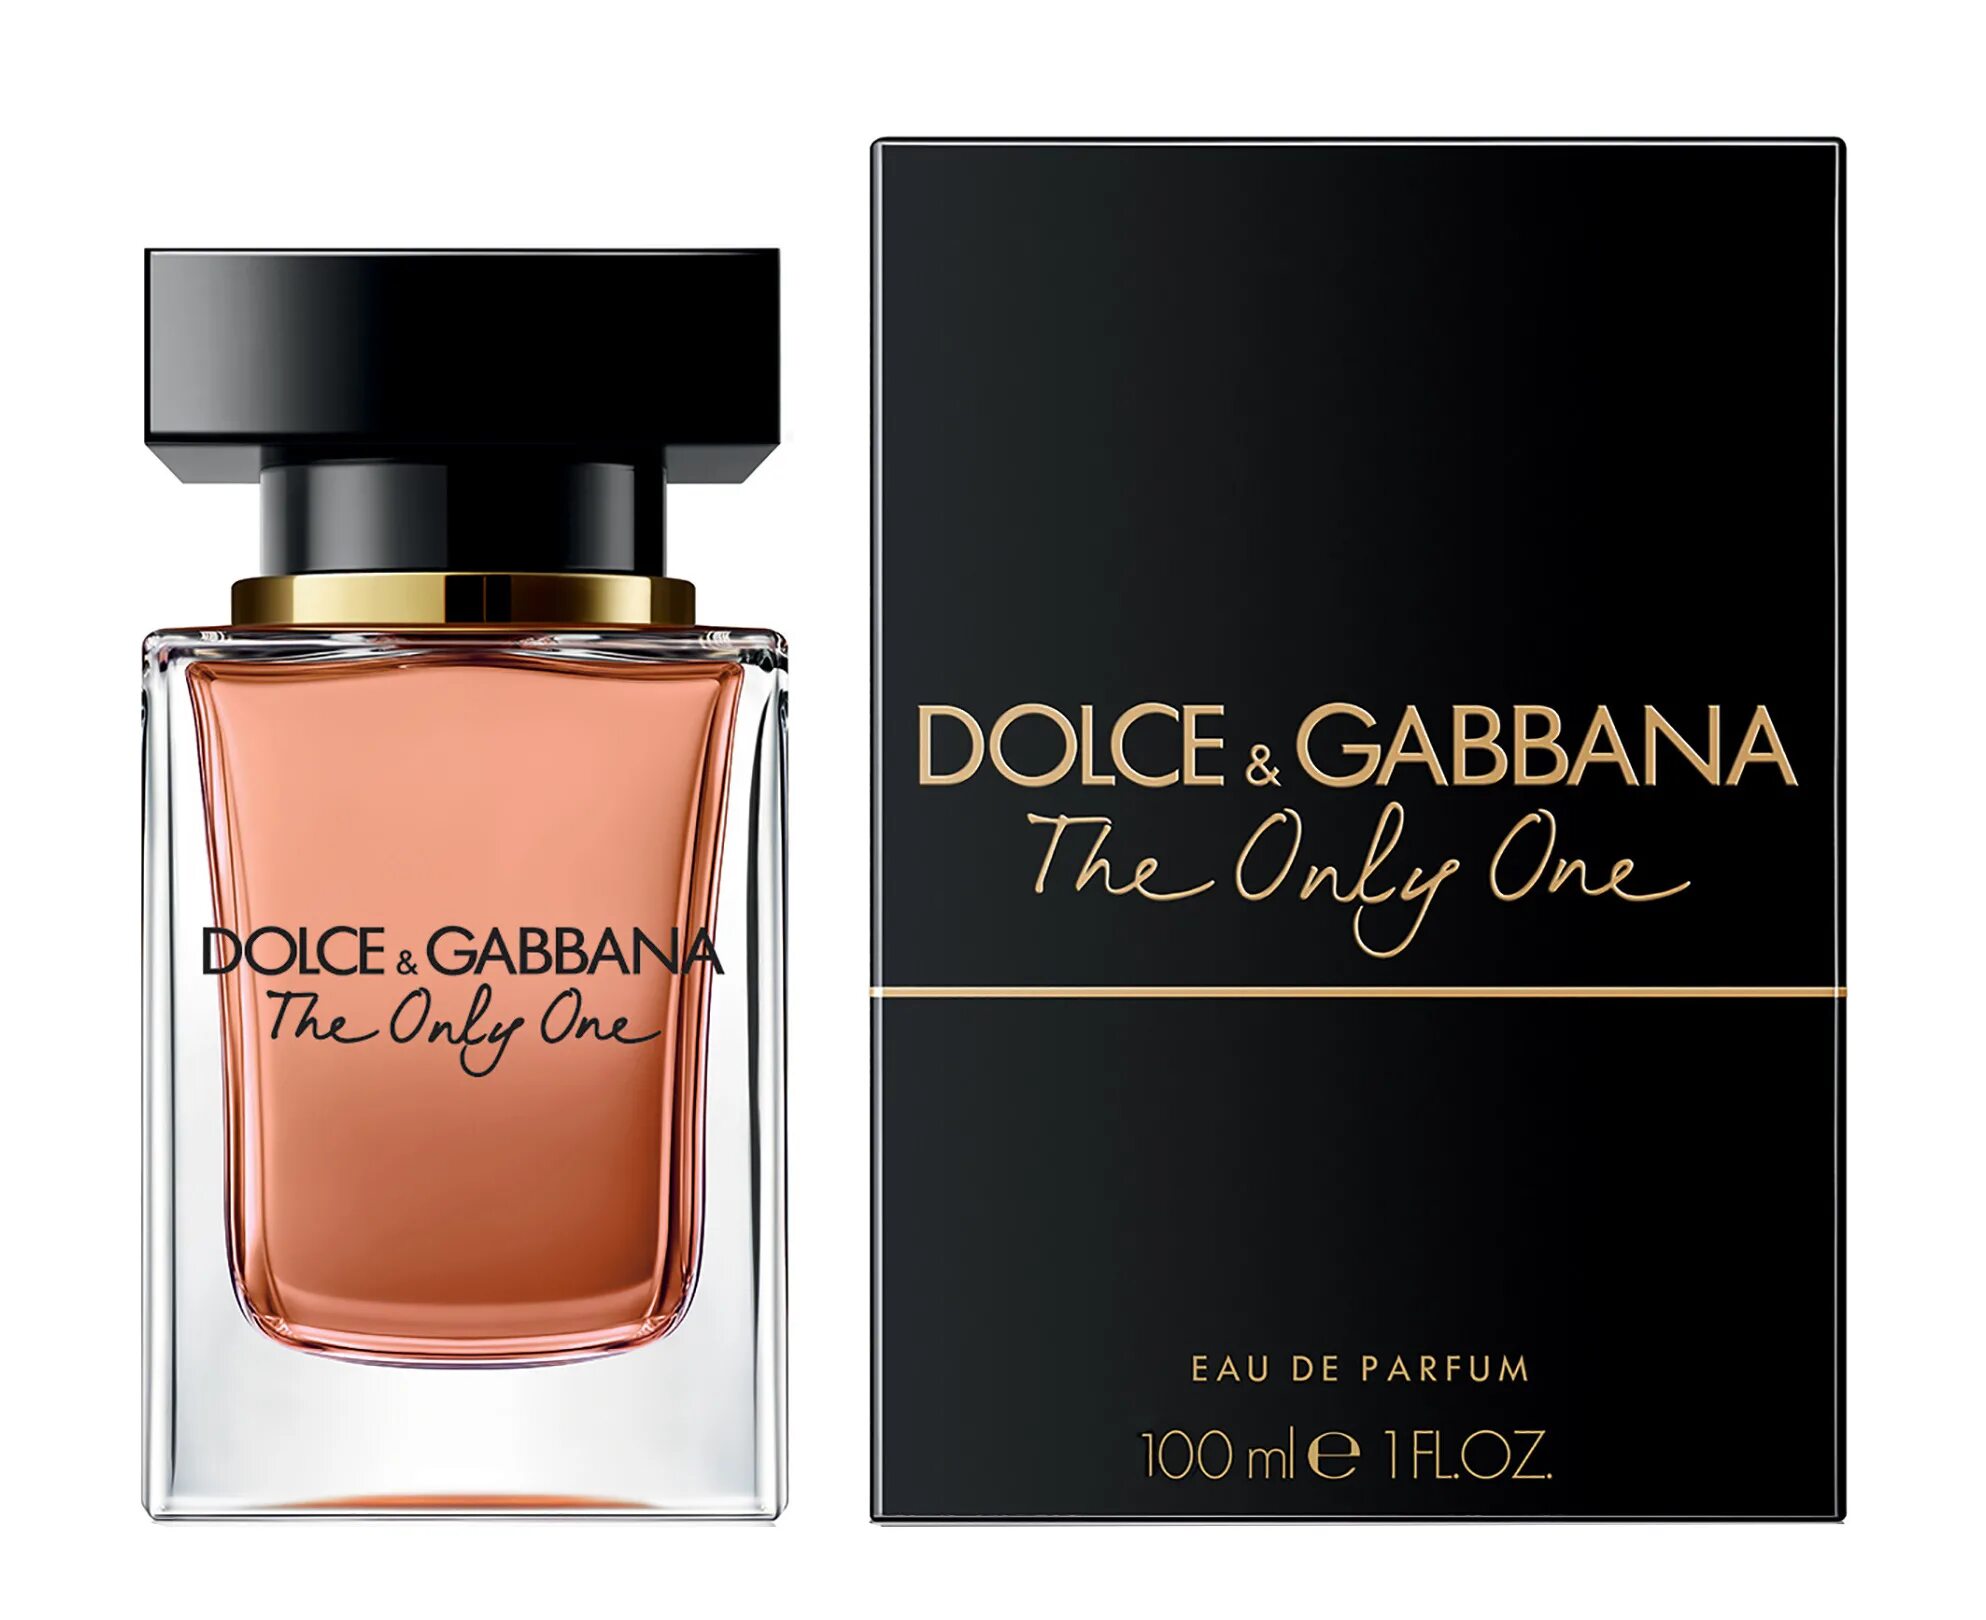 Цена парфюма дольче габбана в летуаль. Dolce & Gabbana the only one, EDP., 100 ml. Dolce & Gabbana the only one EDP 50 ml. Dolce Gabbana the only one 100ml. Dolce Gabbana the only one 50ml.